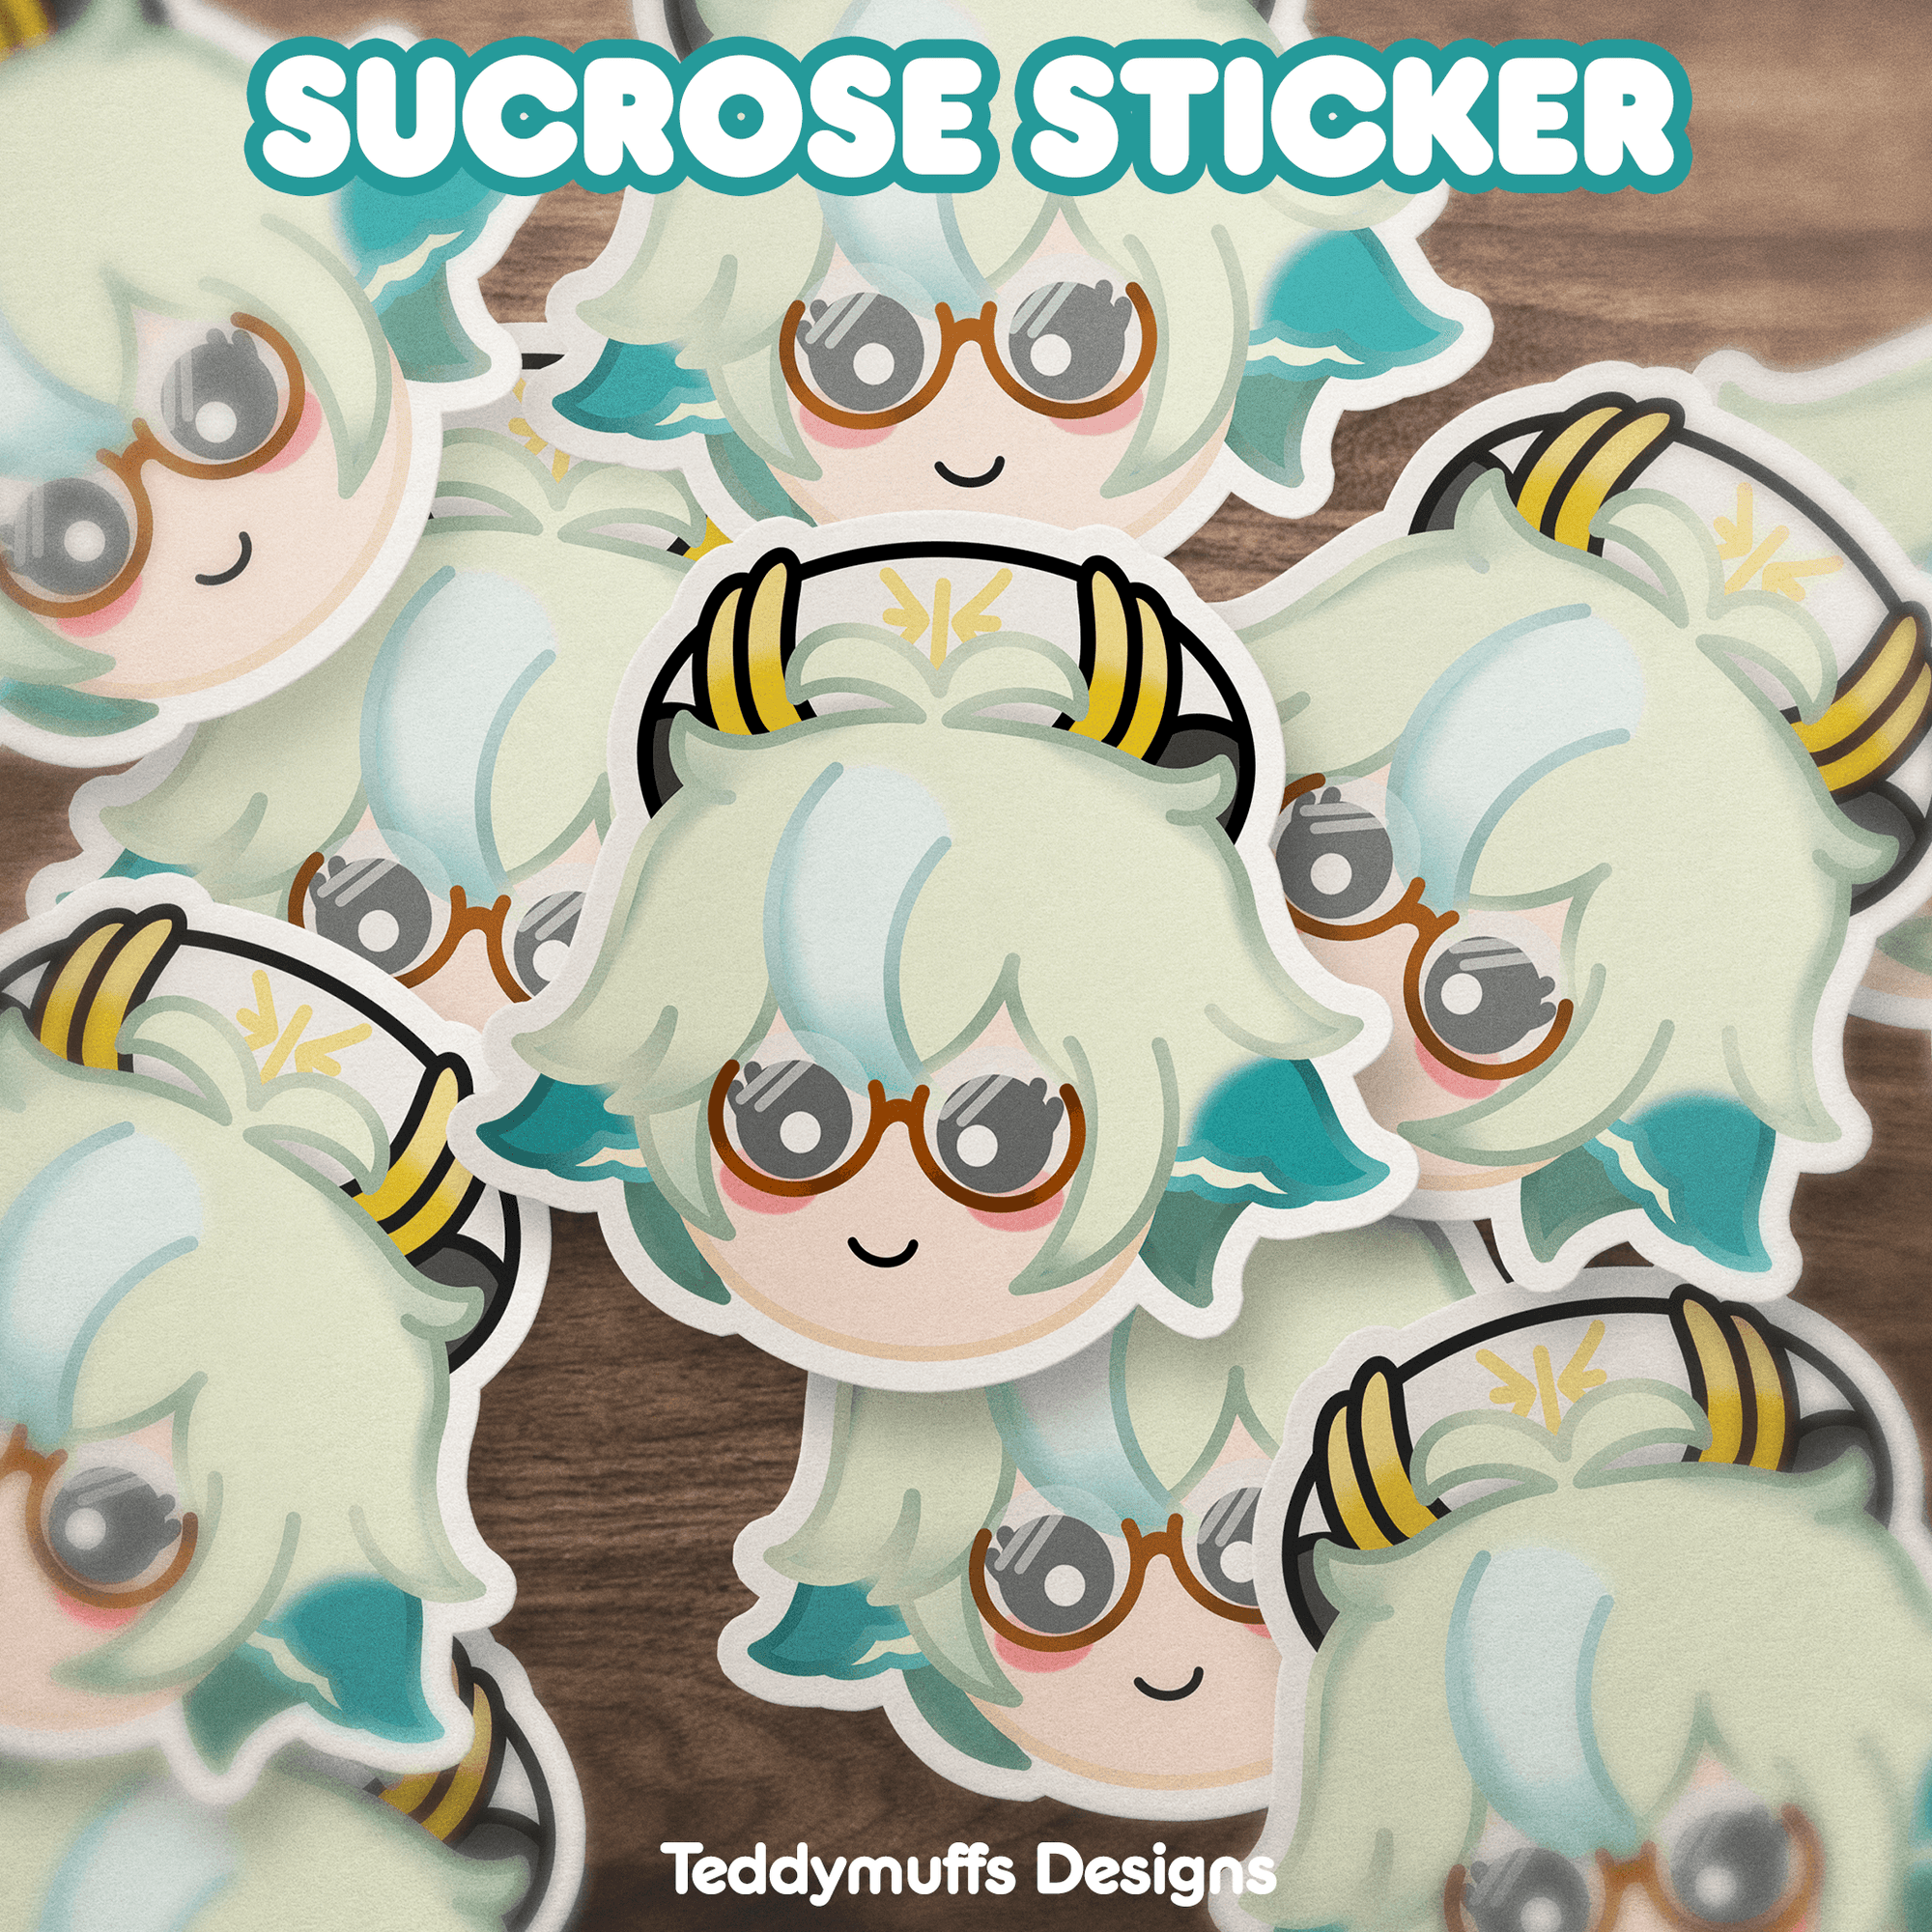 Sucrose Sticker - Teddymuffs Designs